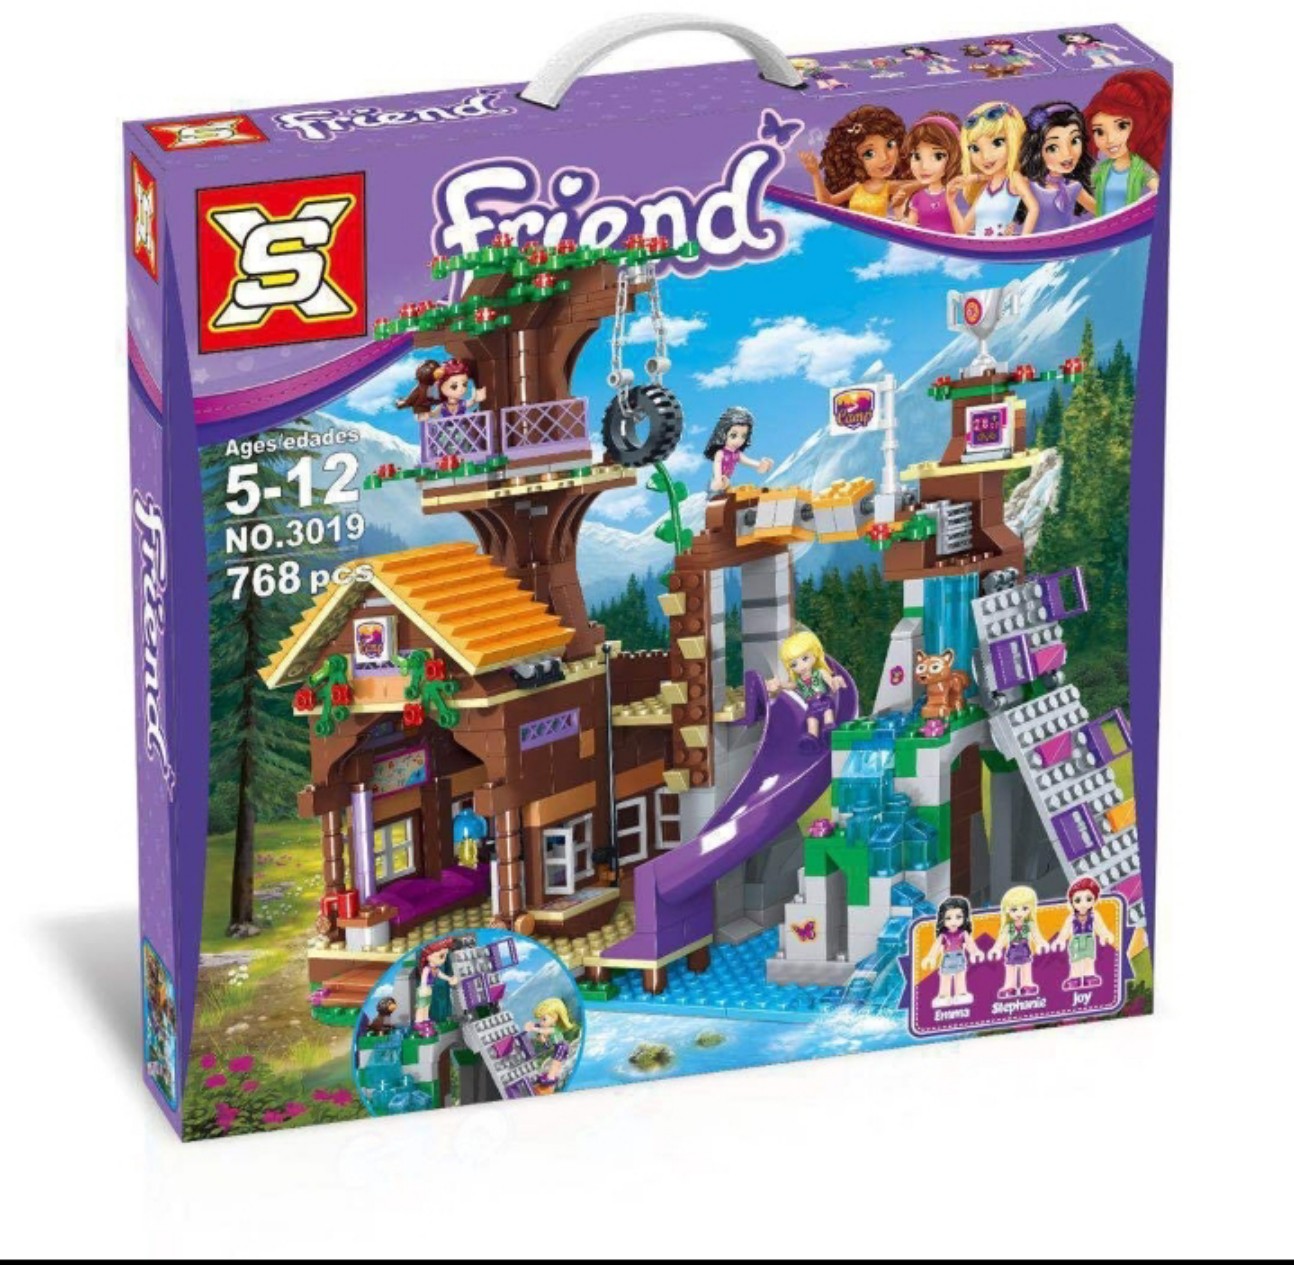 Đồ chơi Lego Friends Nhà trại trên cây 872 chi tiết - XS3019